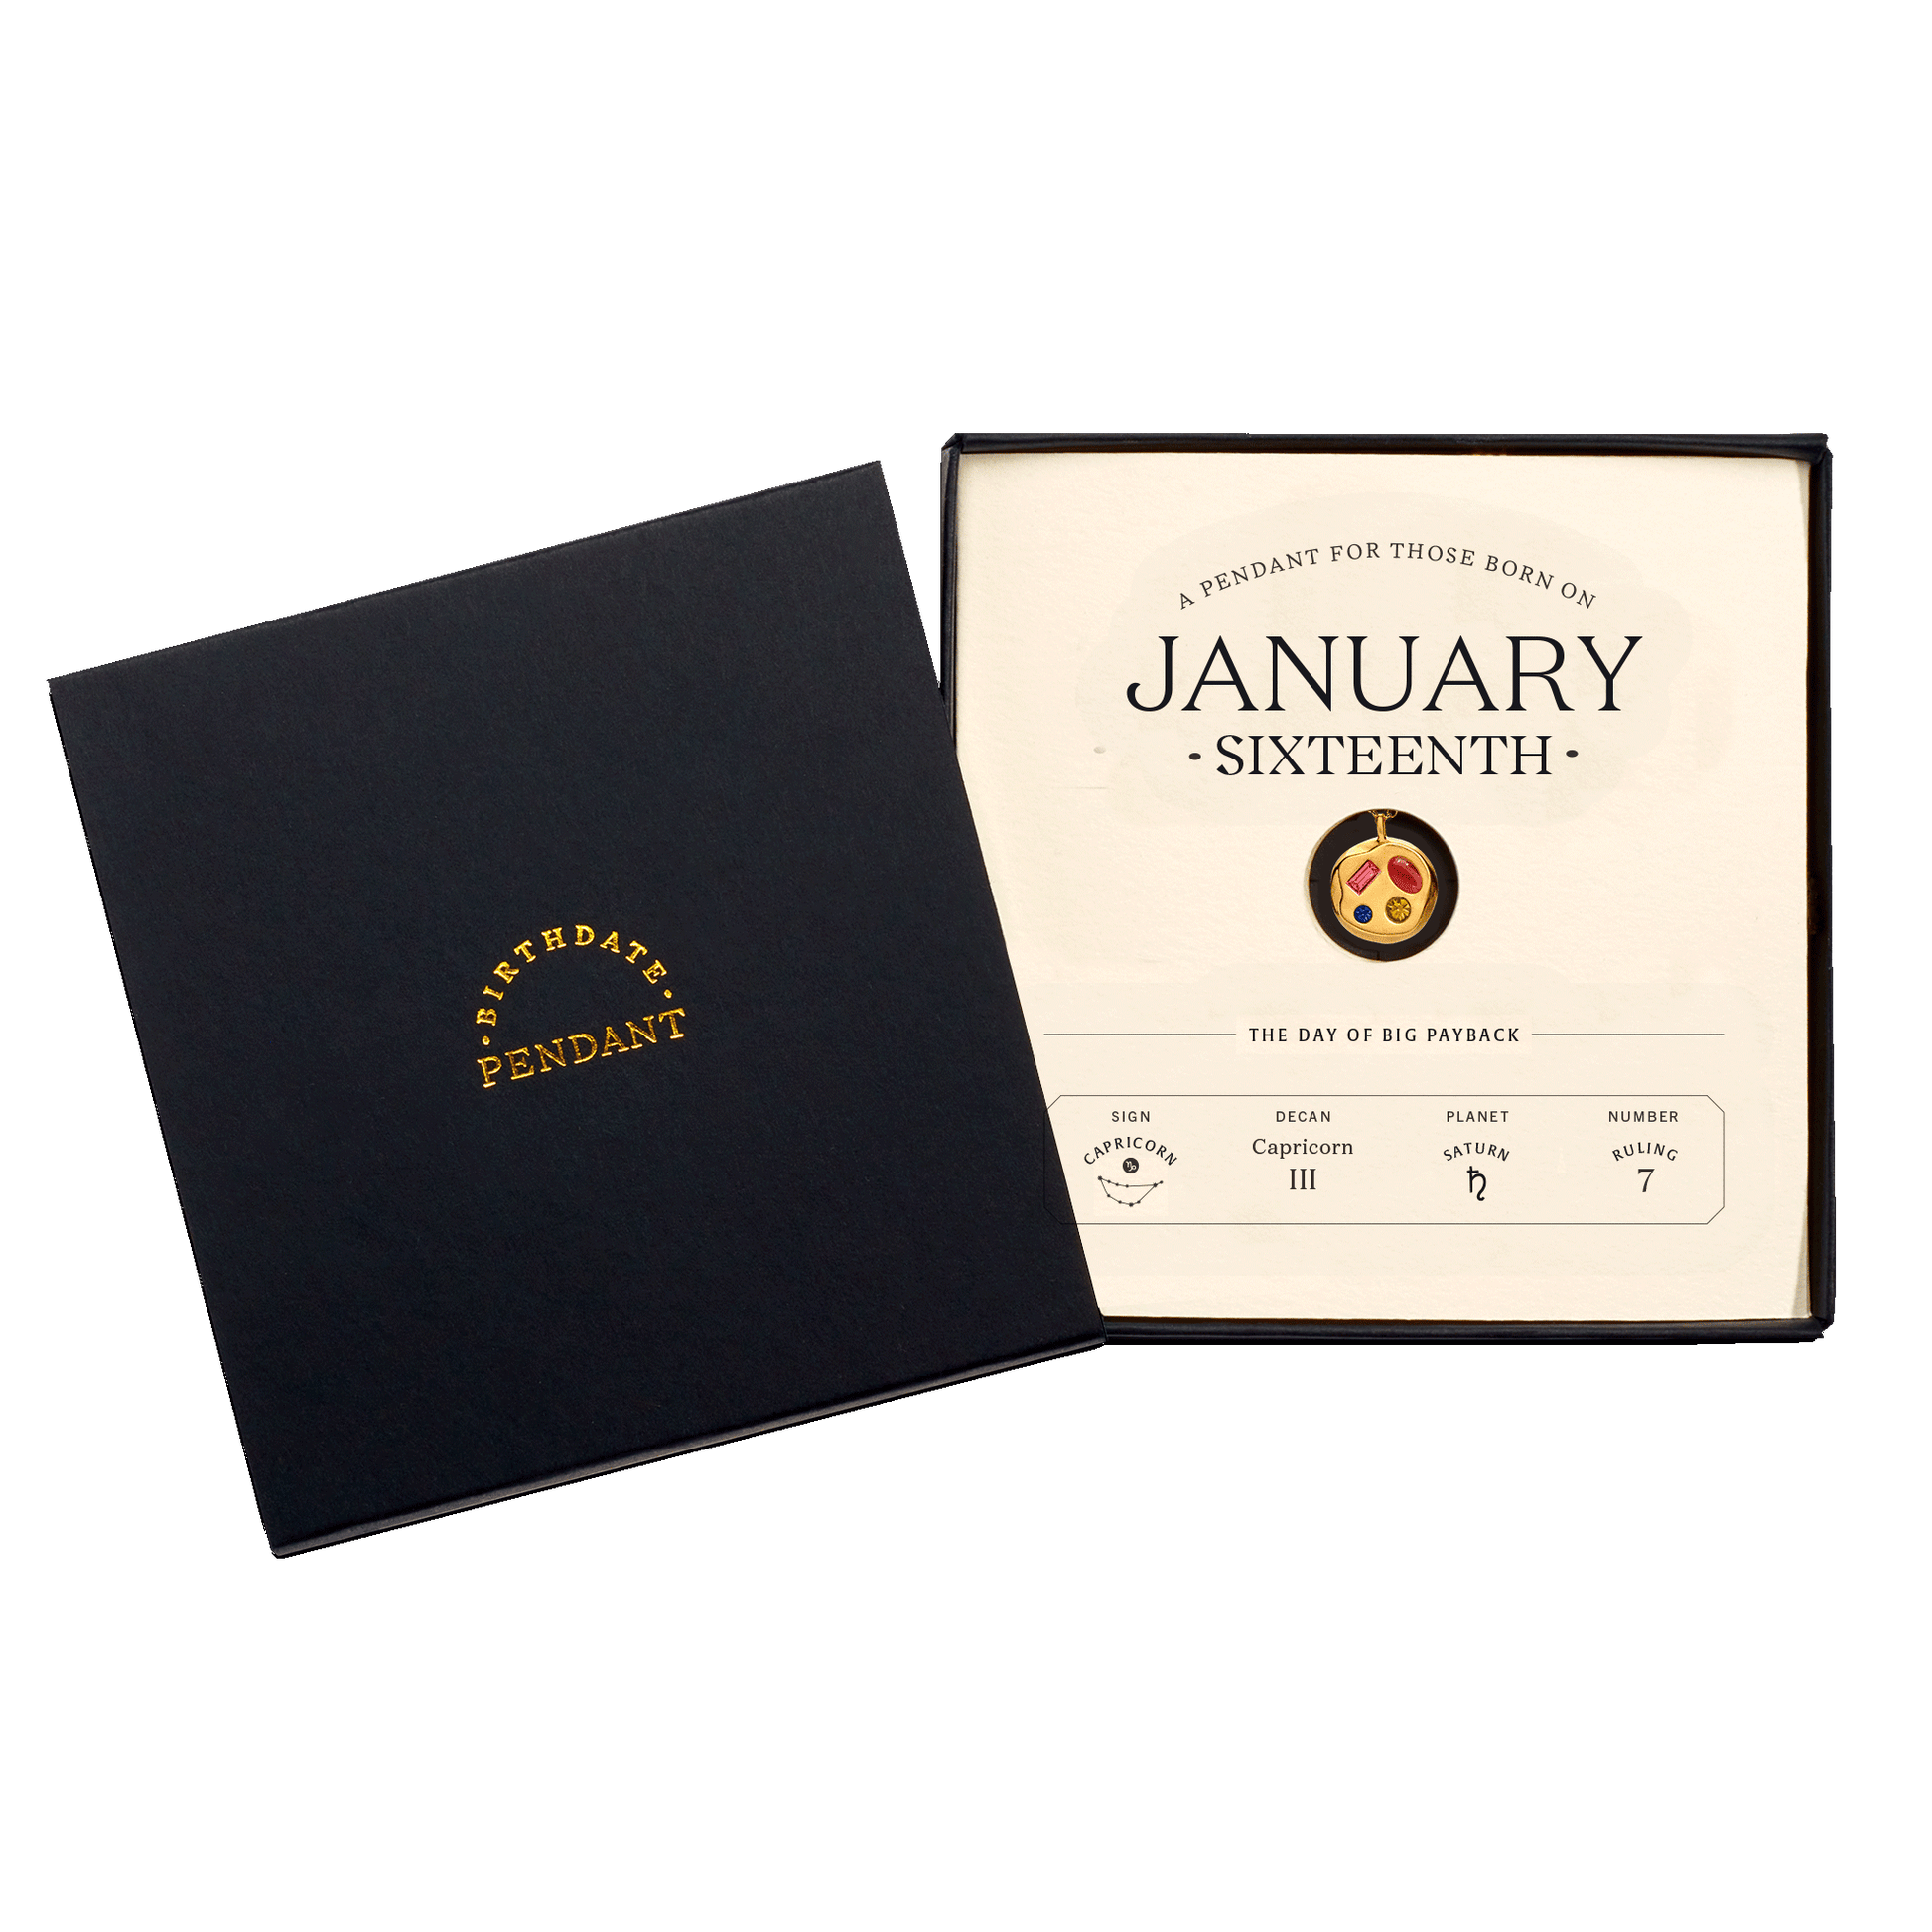 The January Sixteenth Pendant inside its box